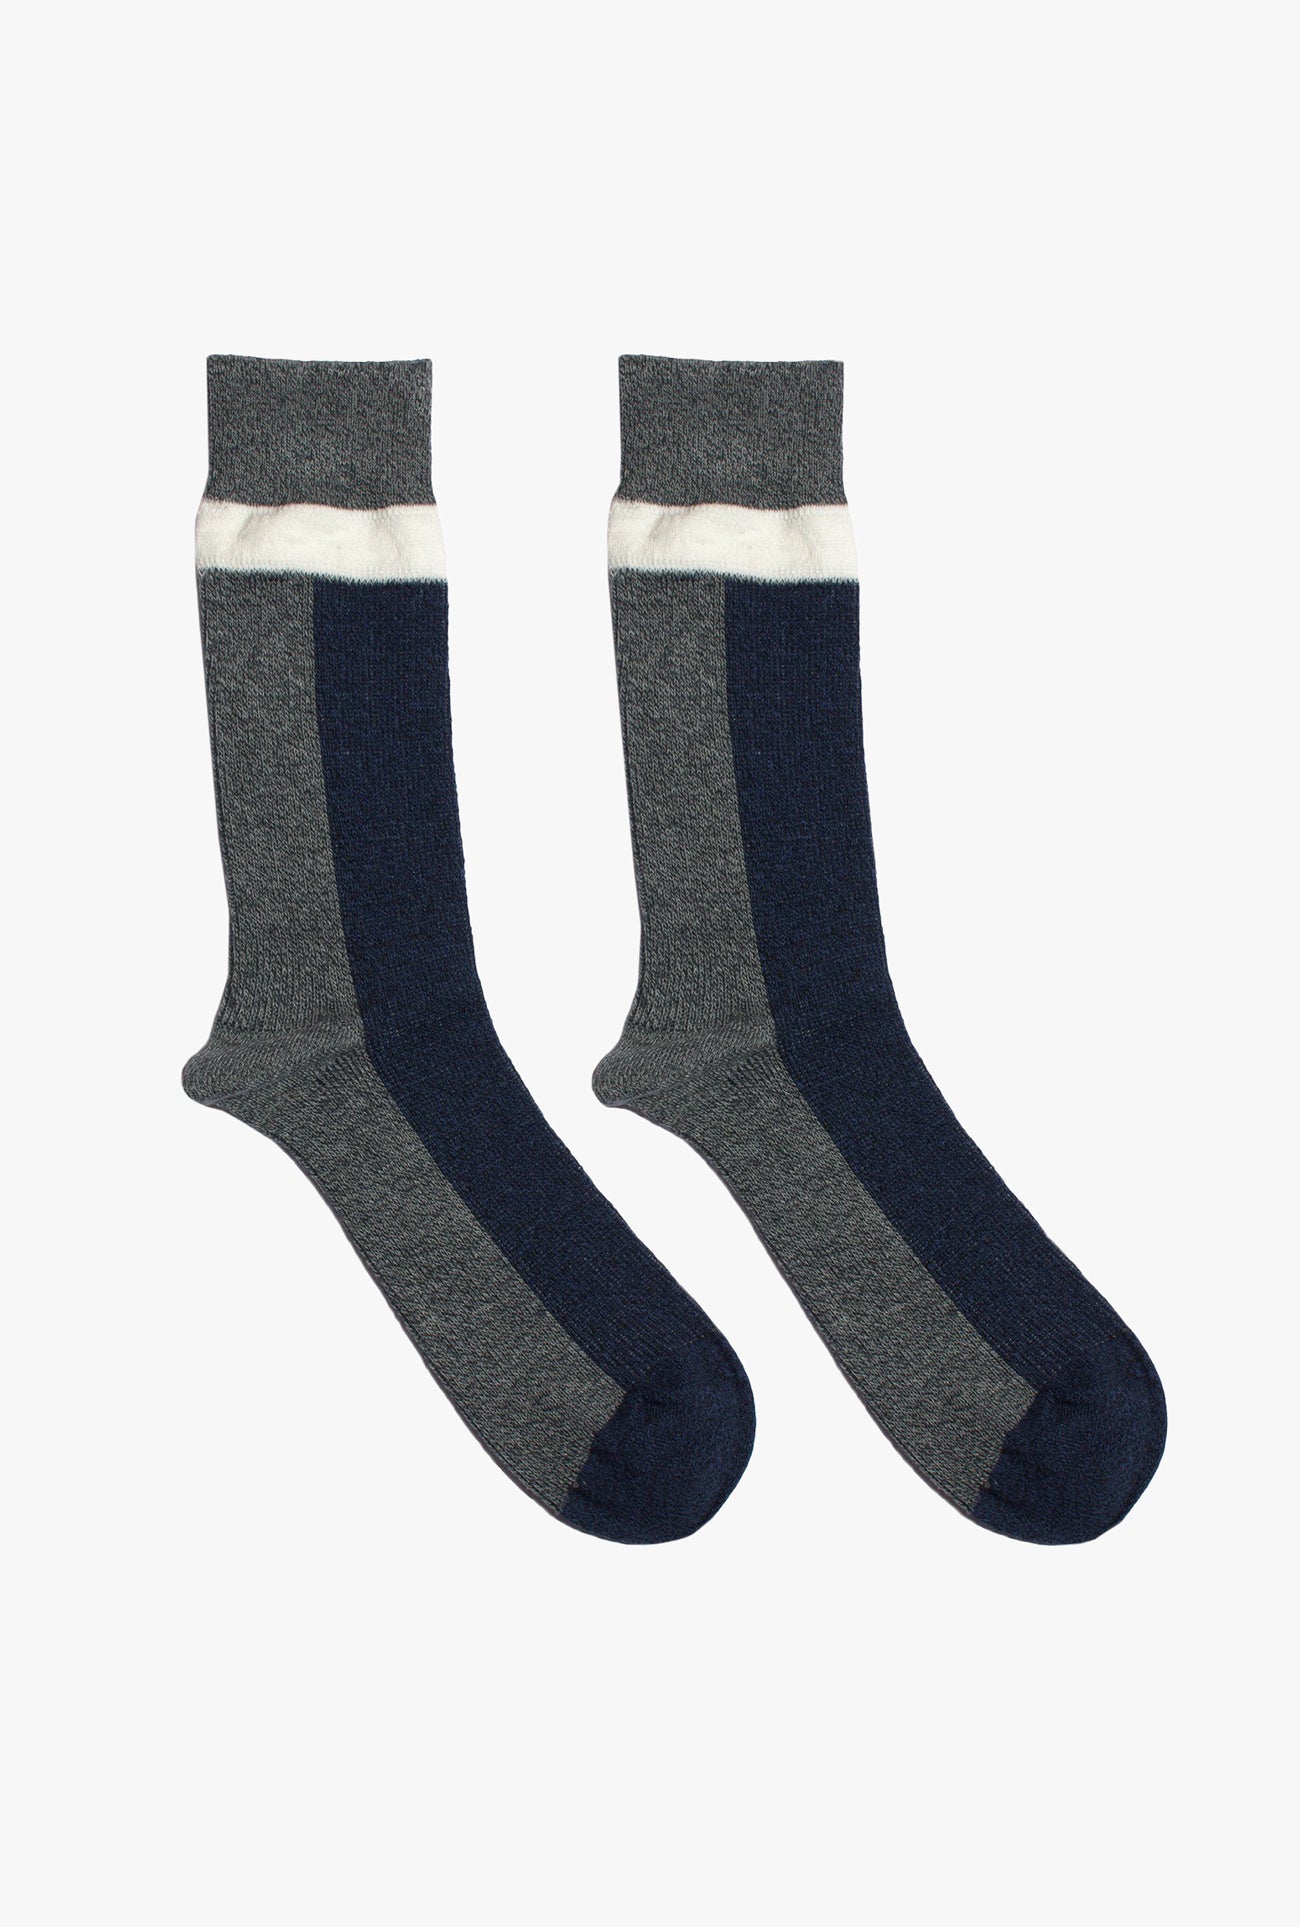 Three Sock